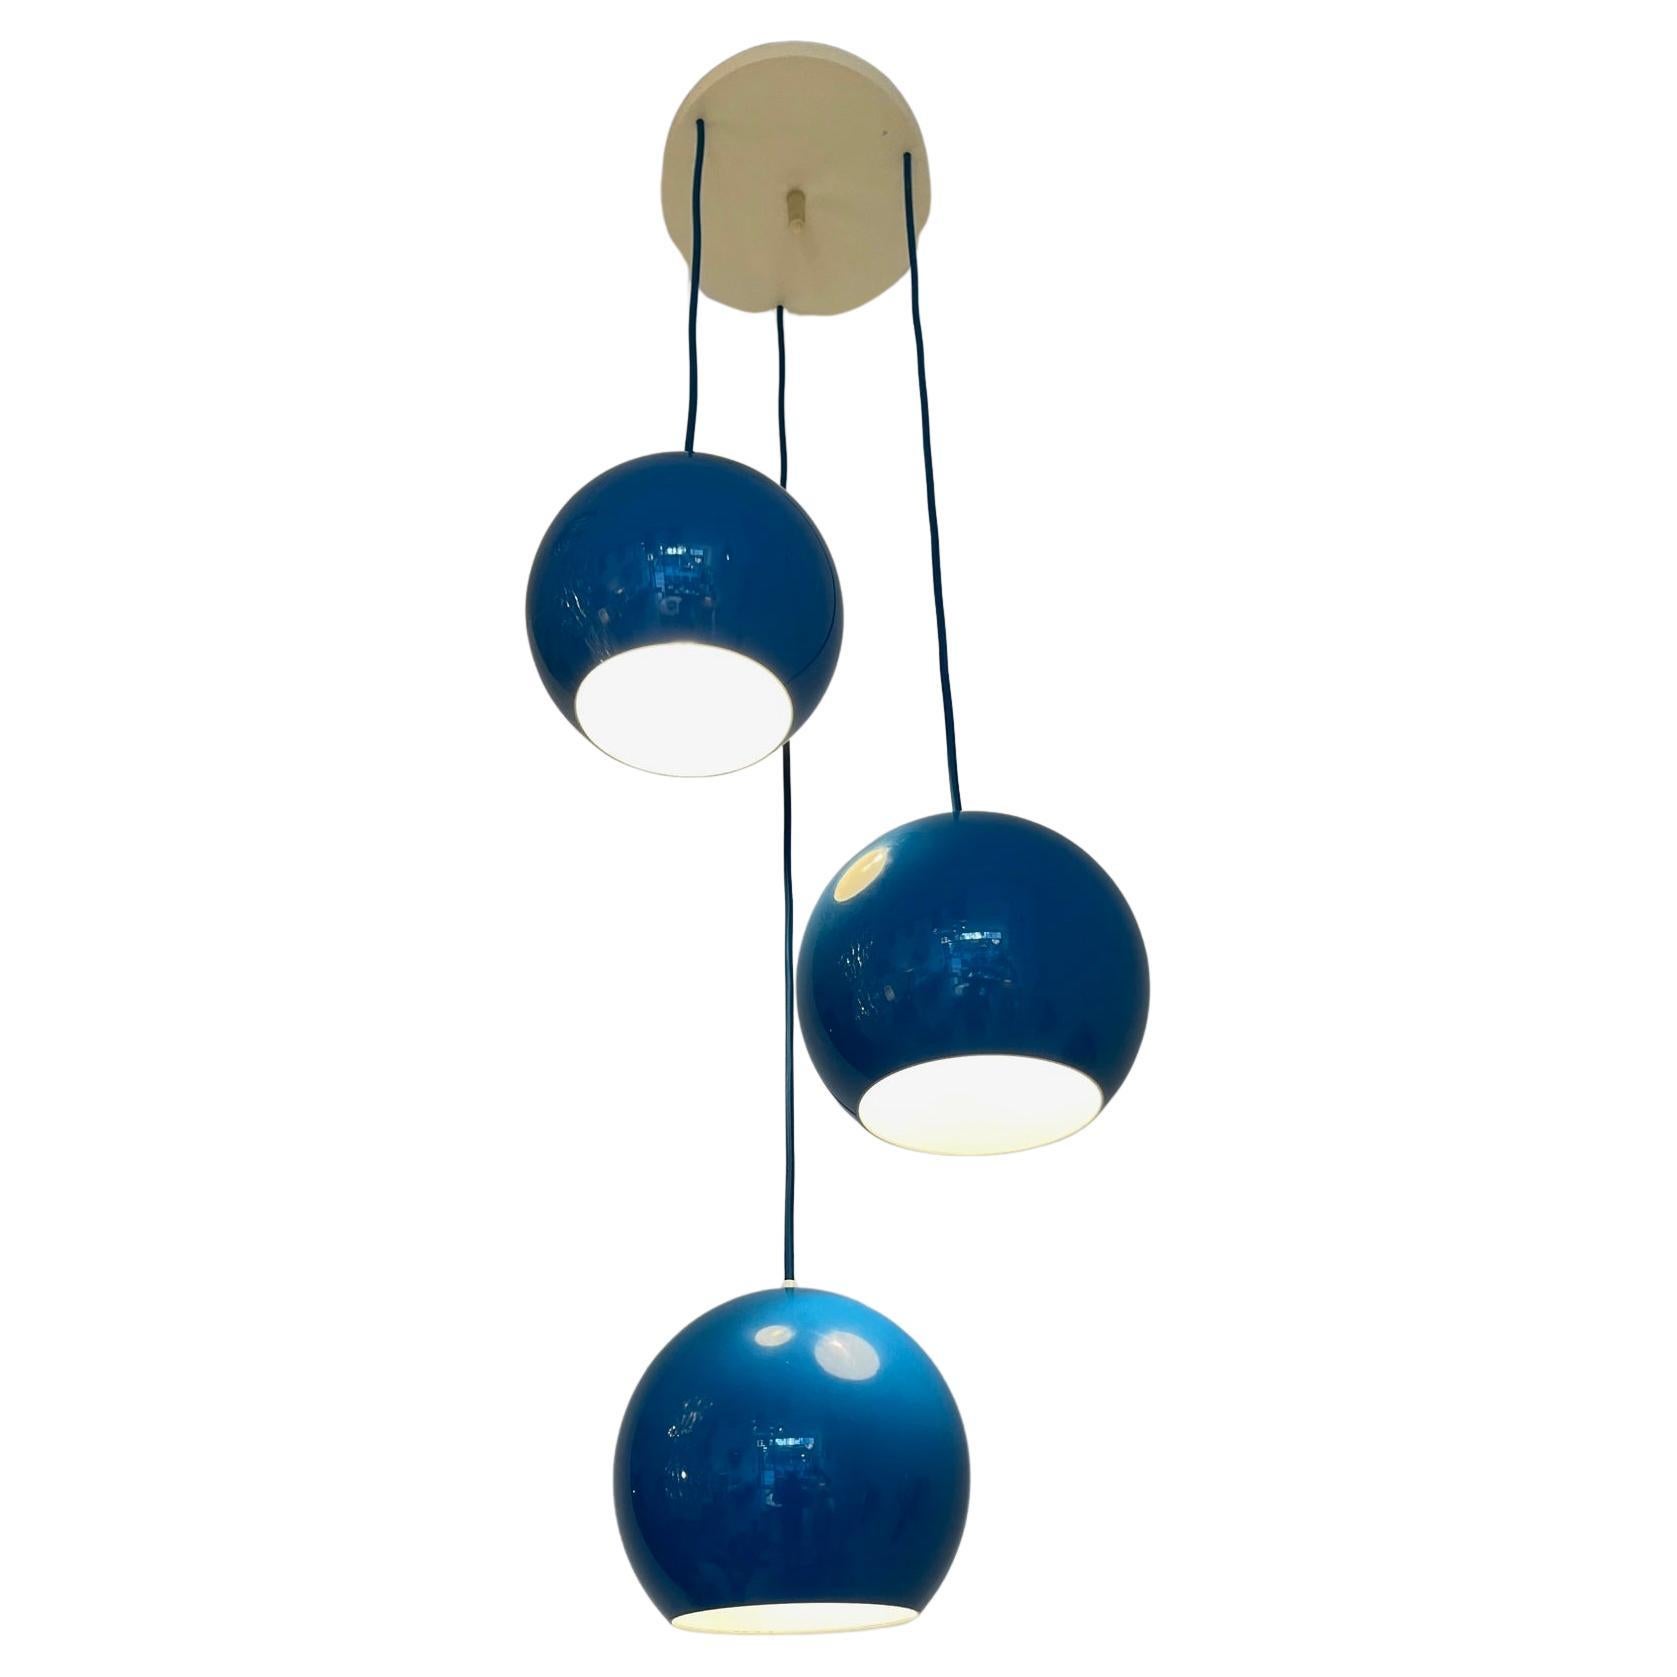 Lampe à suspension vintage à trois branches bleu turquoise Topan de Verner Panton, vers 1959